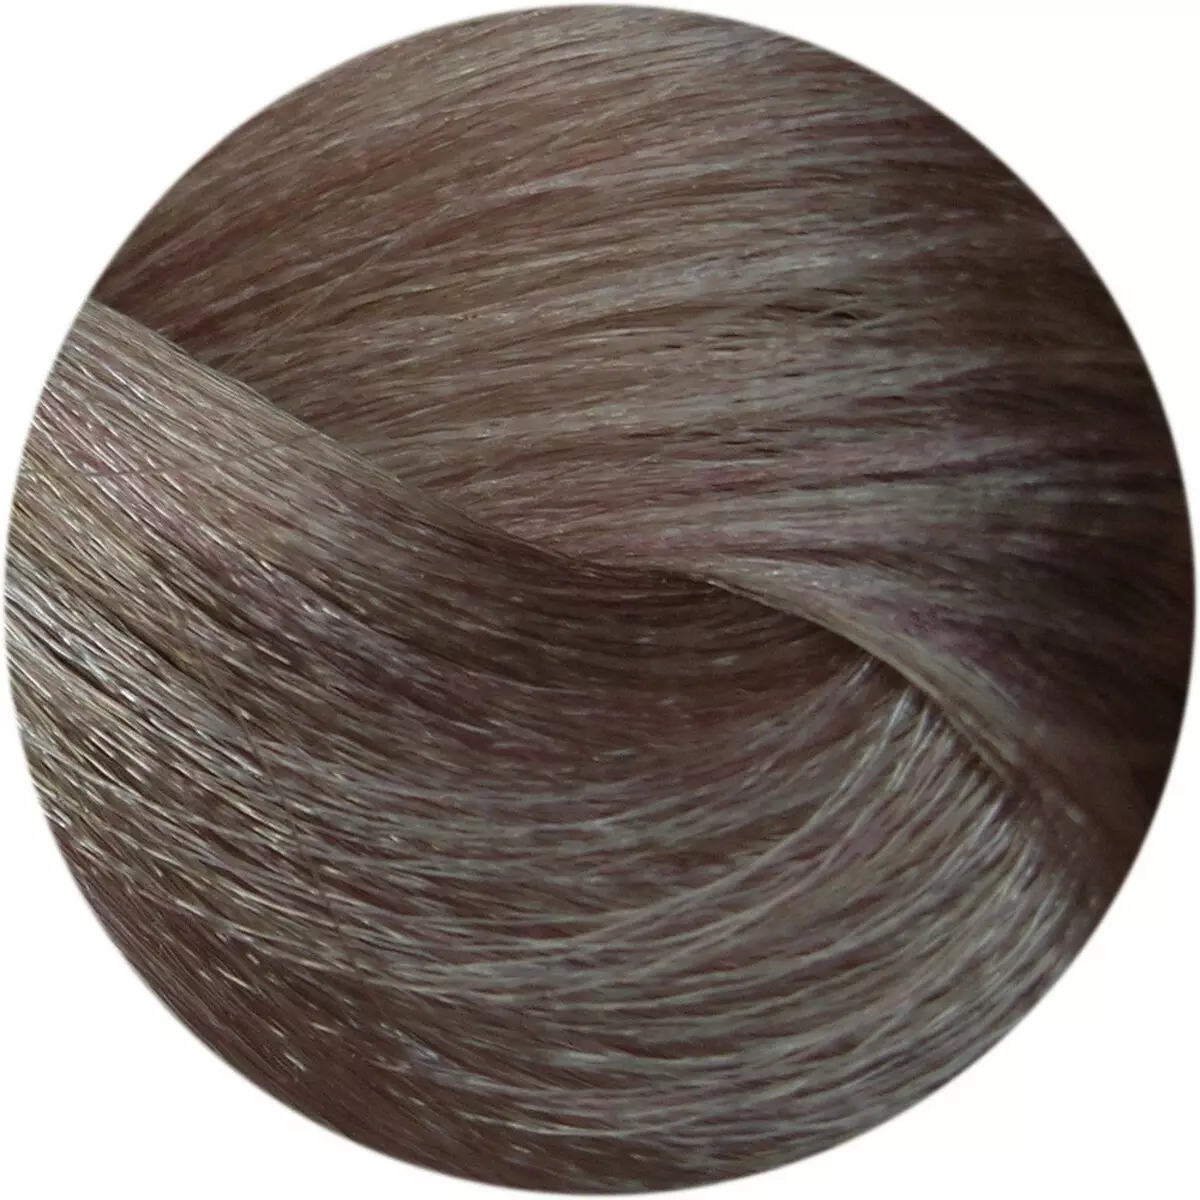 Ash Hair Paints (77 fotografií): Vlastnosti vlasů zbarvení v popelné blondýnce a tmavý popel, světelný popel a další odstíny popelné barvy 5440_49